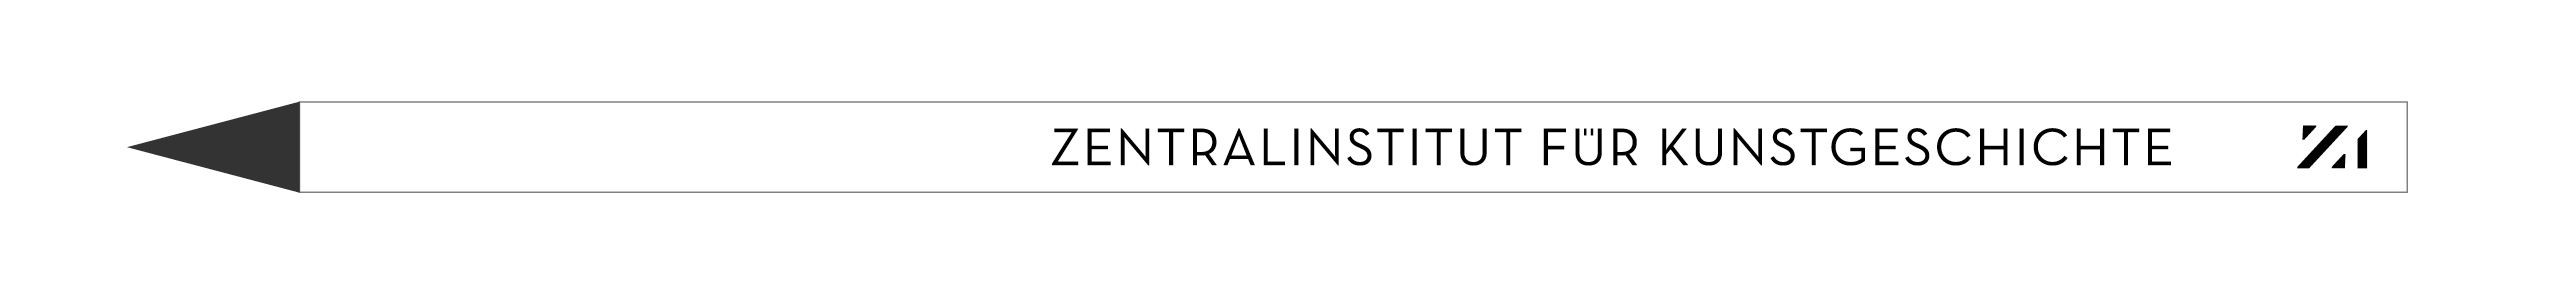 Logoentwicklung und Styleguide für das Zentralinstitut für Kunstgeschichte, Designagentur Sieveking München